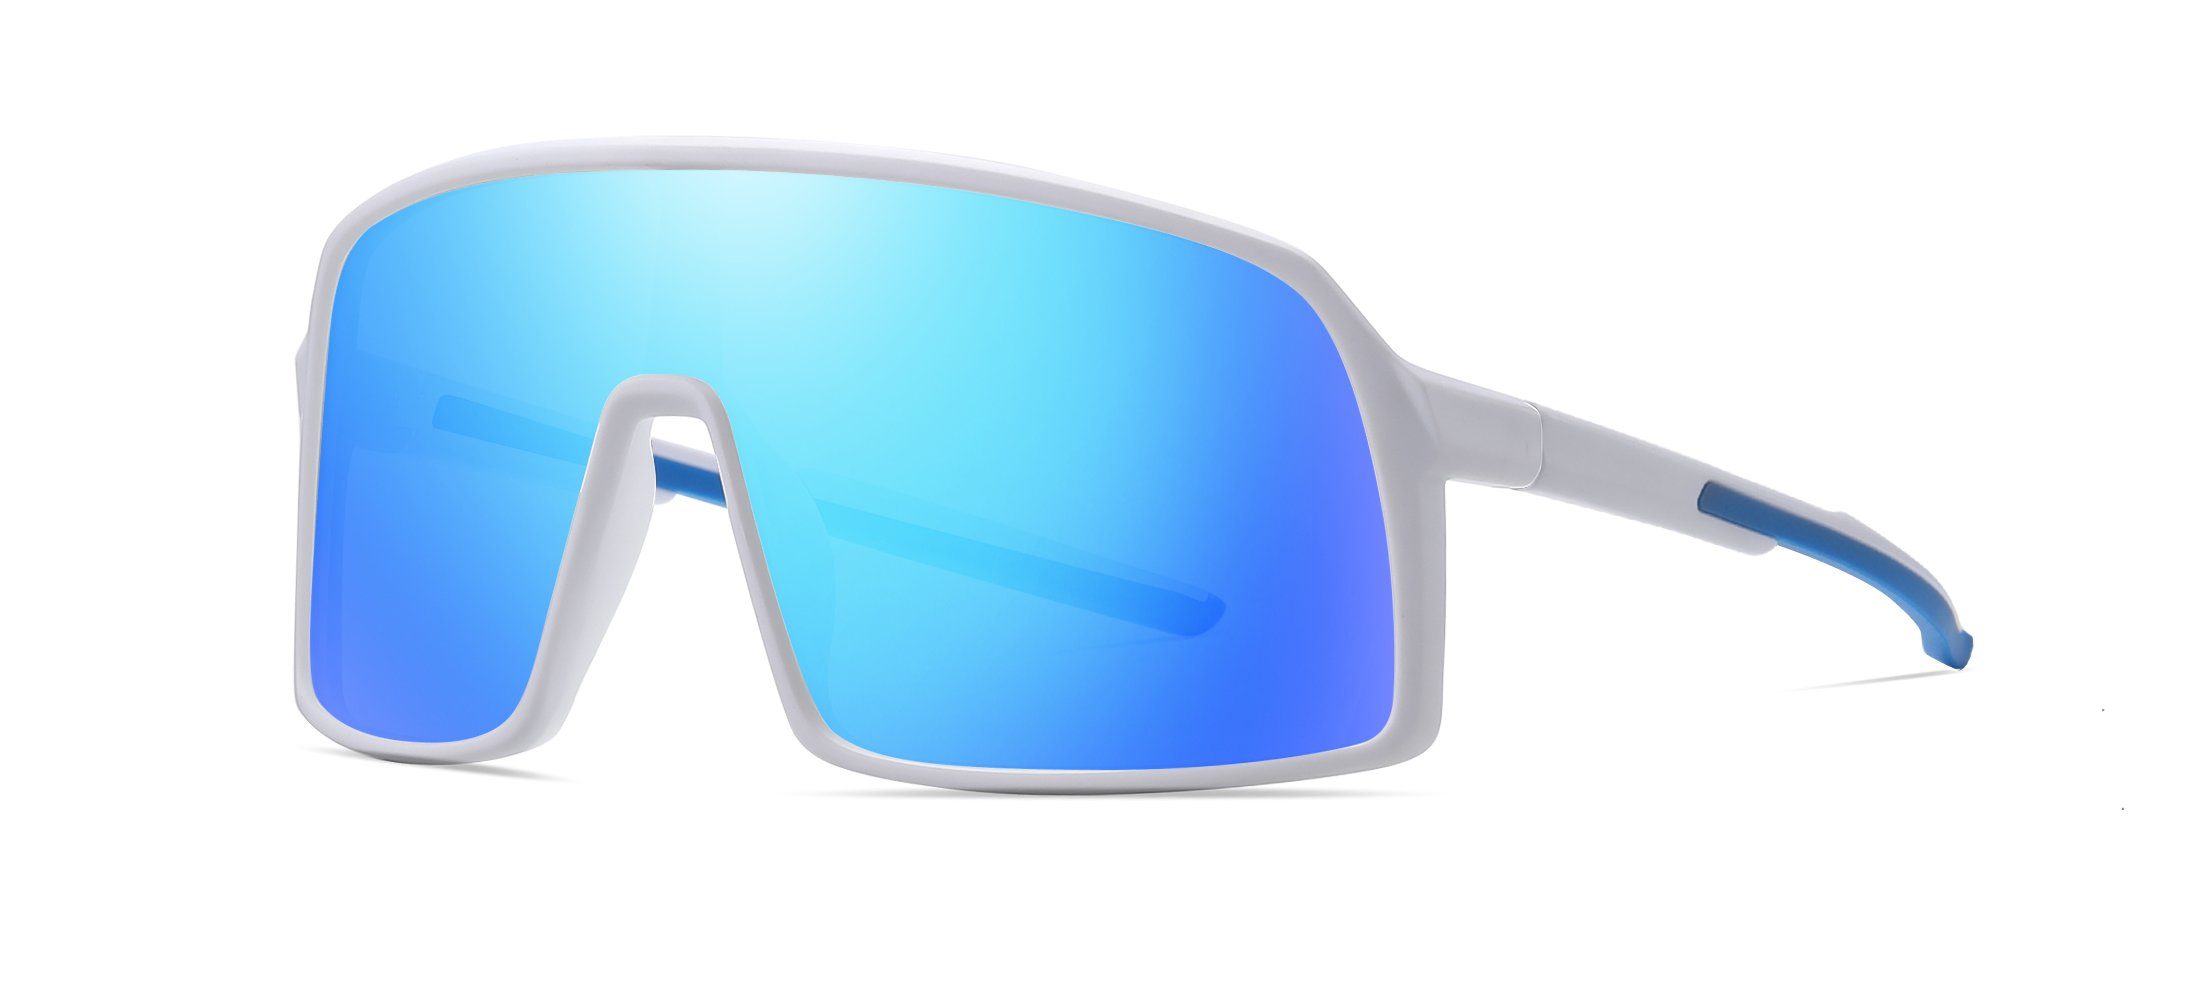 PACIEA Fahrradbrille Fahrradbrille Sportbrille Damen Herren Unisex polarisiert leicht weißblau